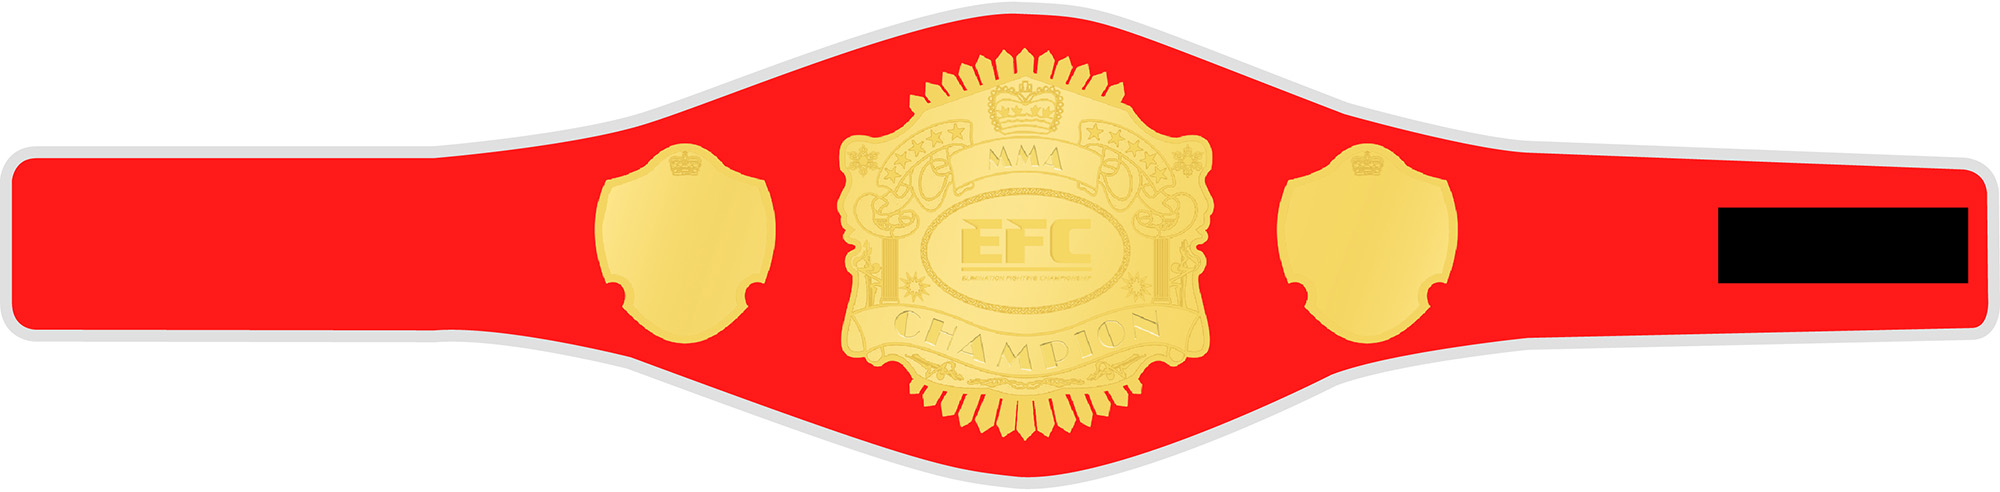 EFC Champion Grtel